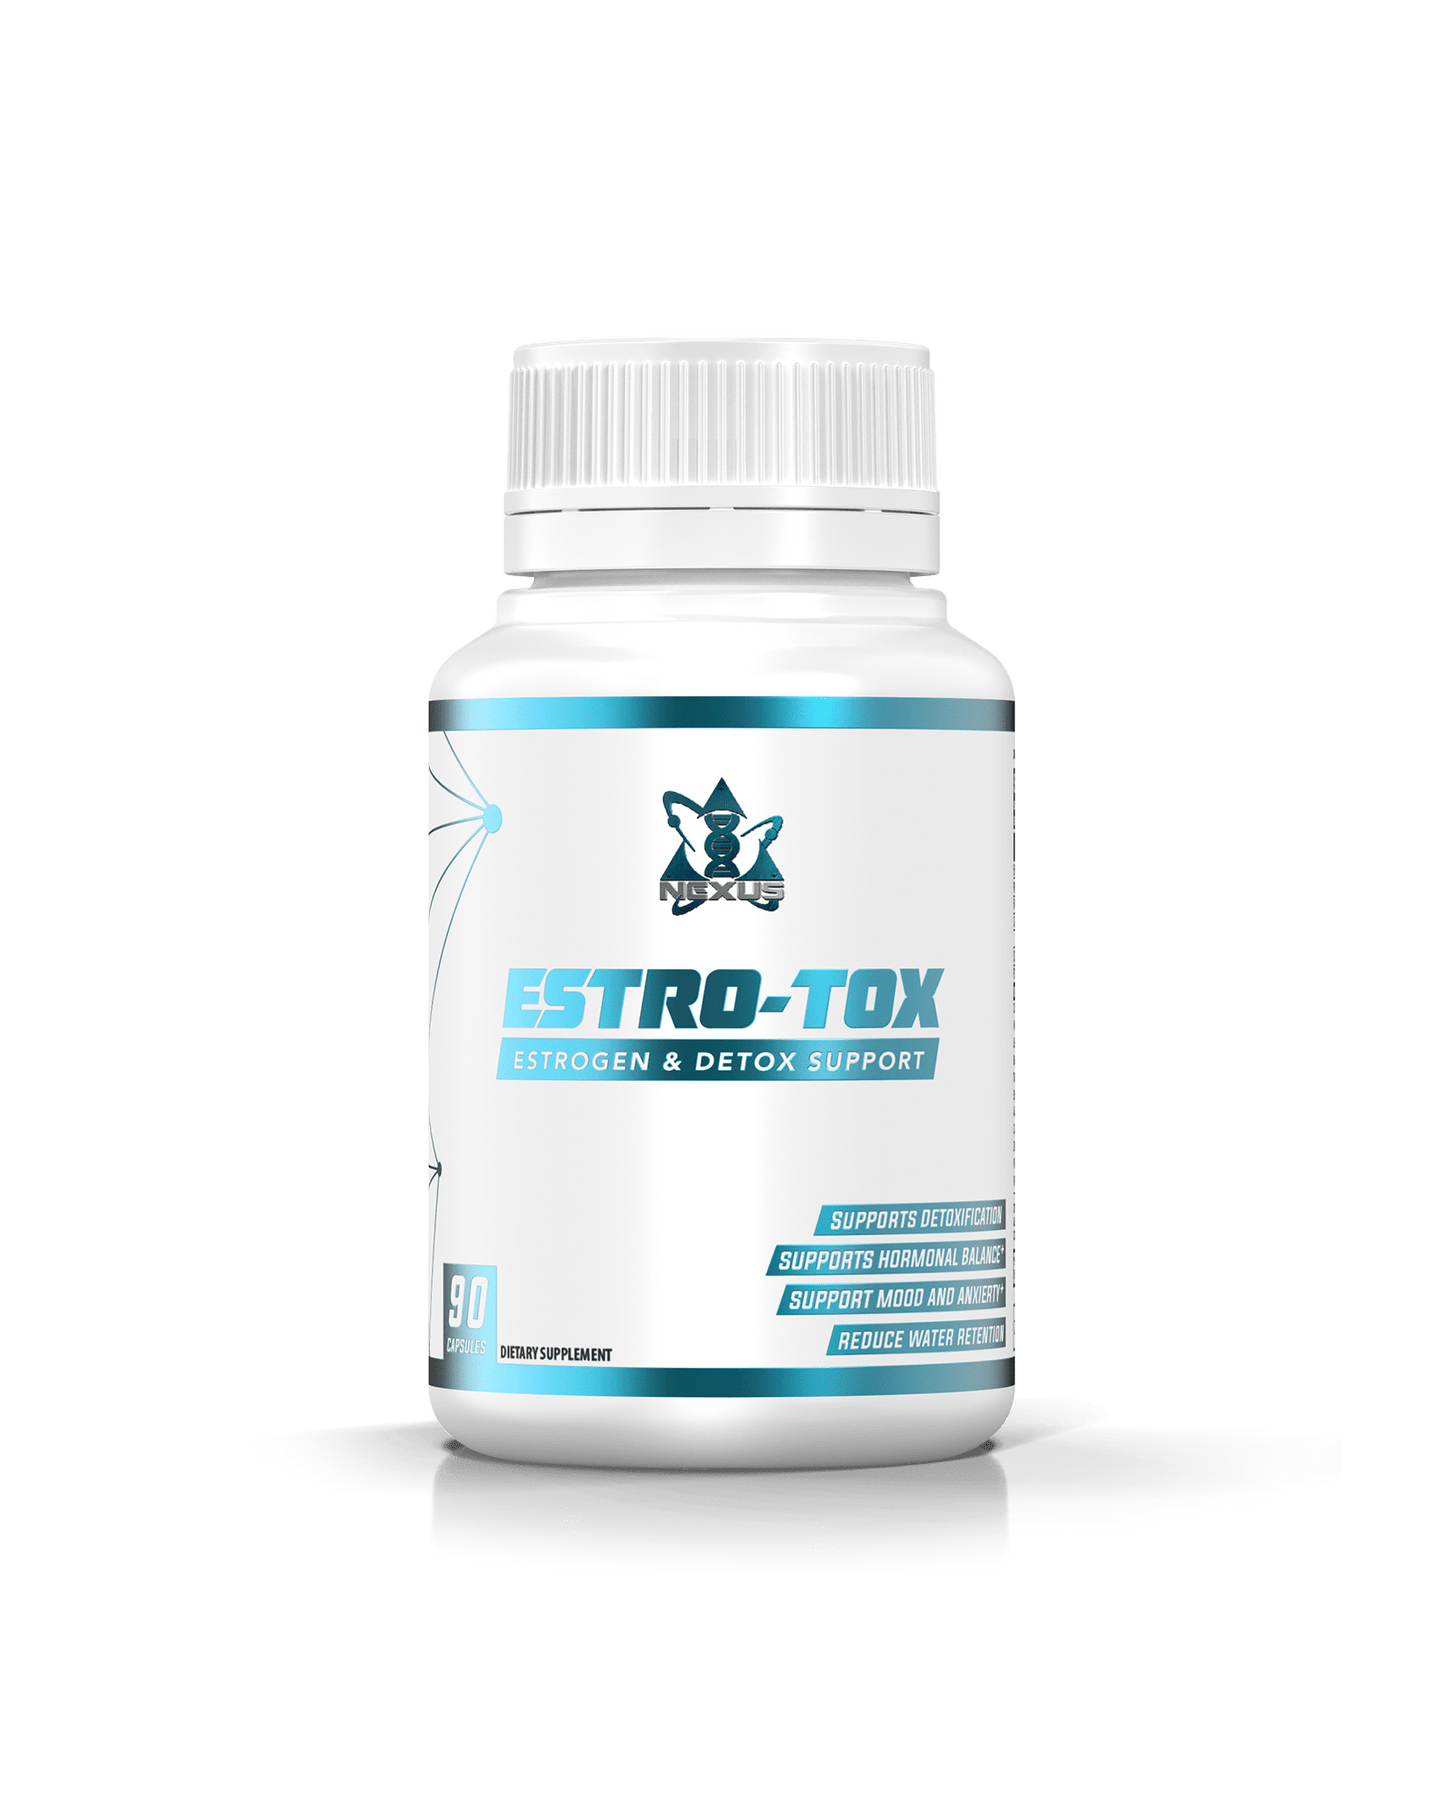 Estro-Tox: Estrogen & Detox Support